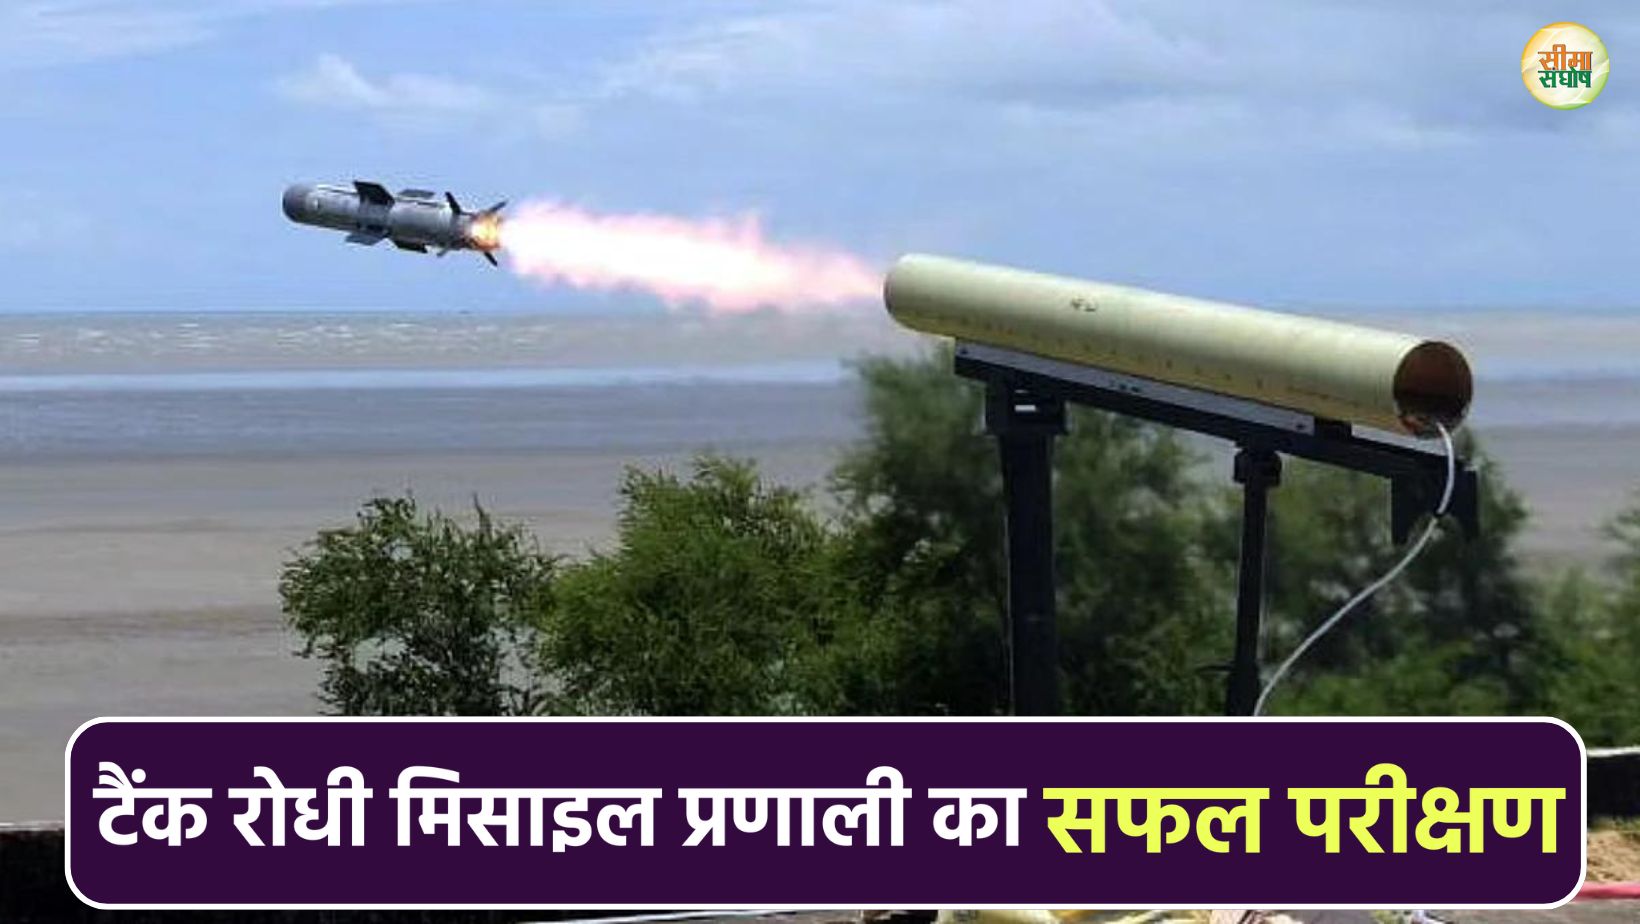 सेना ने किया टैंक रोधी मिसाइल प्रणाली का सफल परीक्षण, डीआरडीओ की एक और सफलता